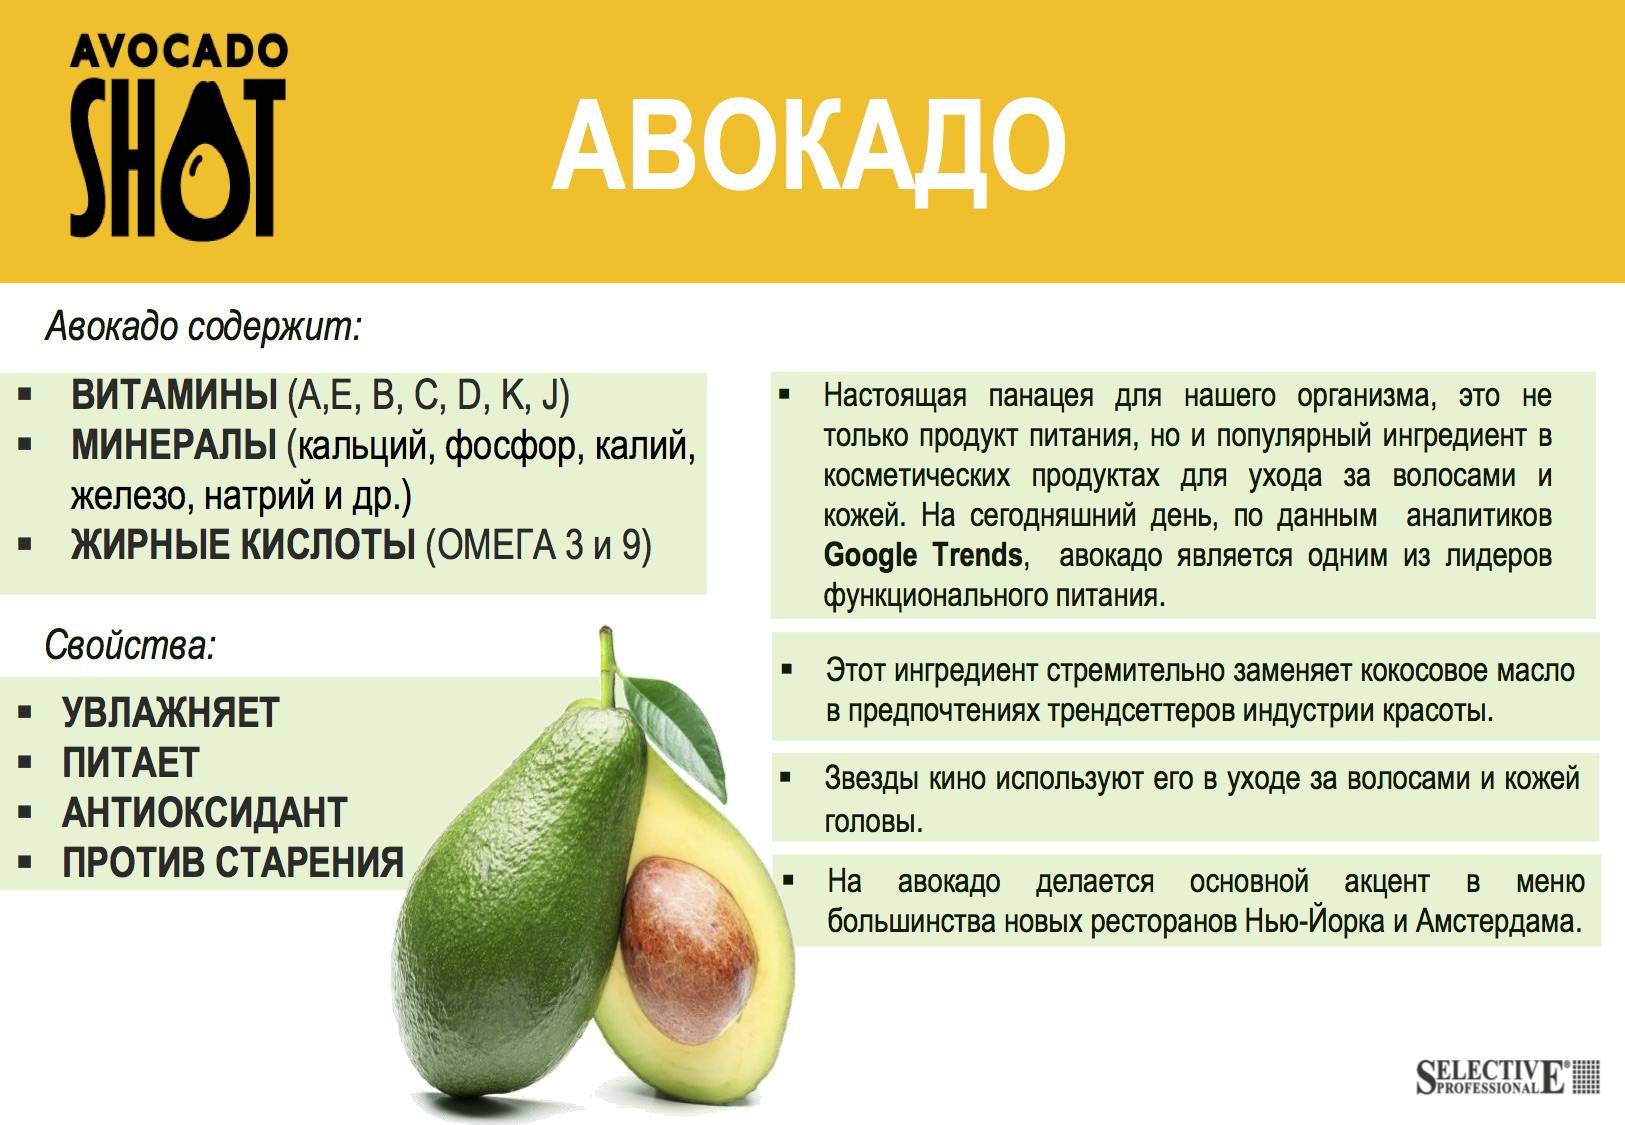 Авокадо: полезные свойства и применение в медицине и кулинарии